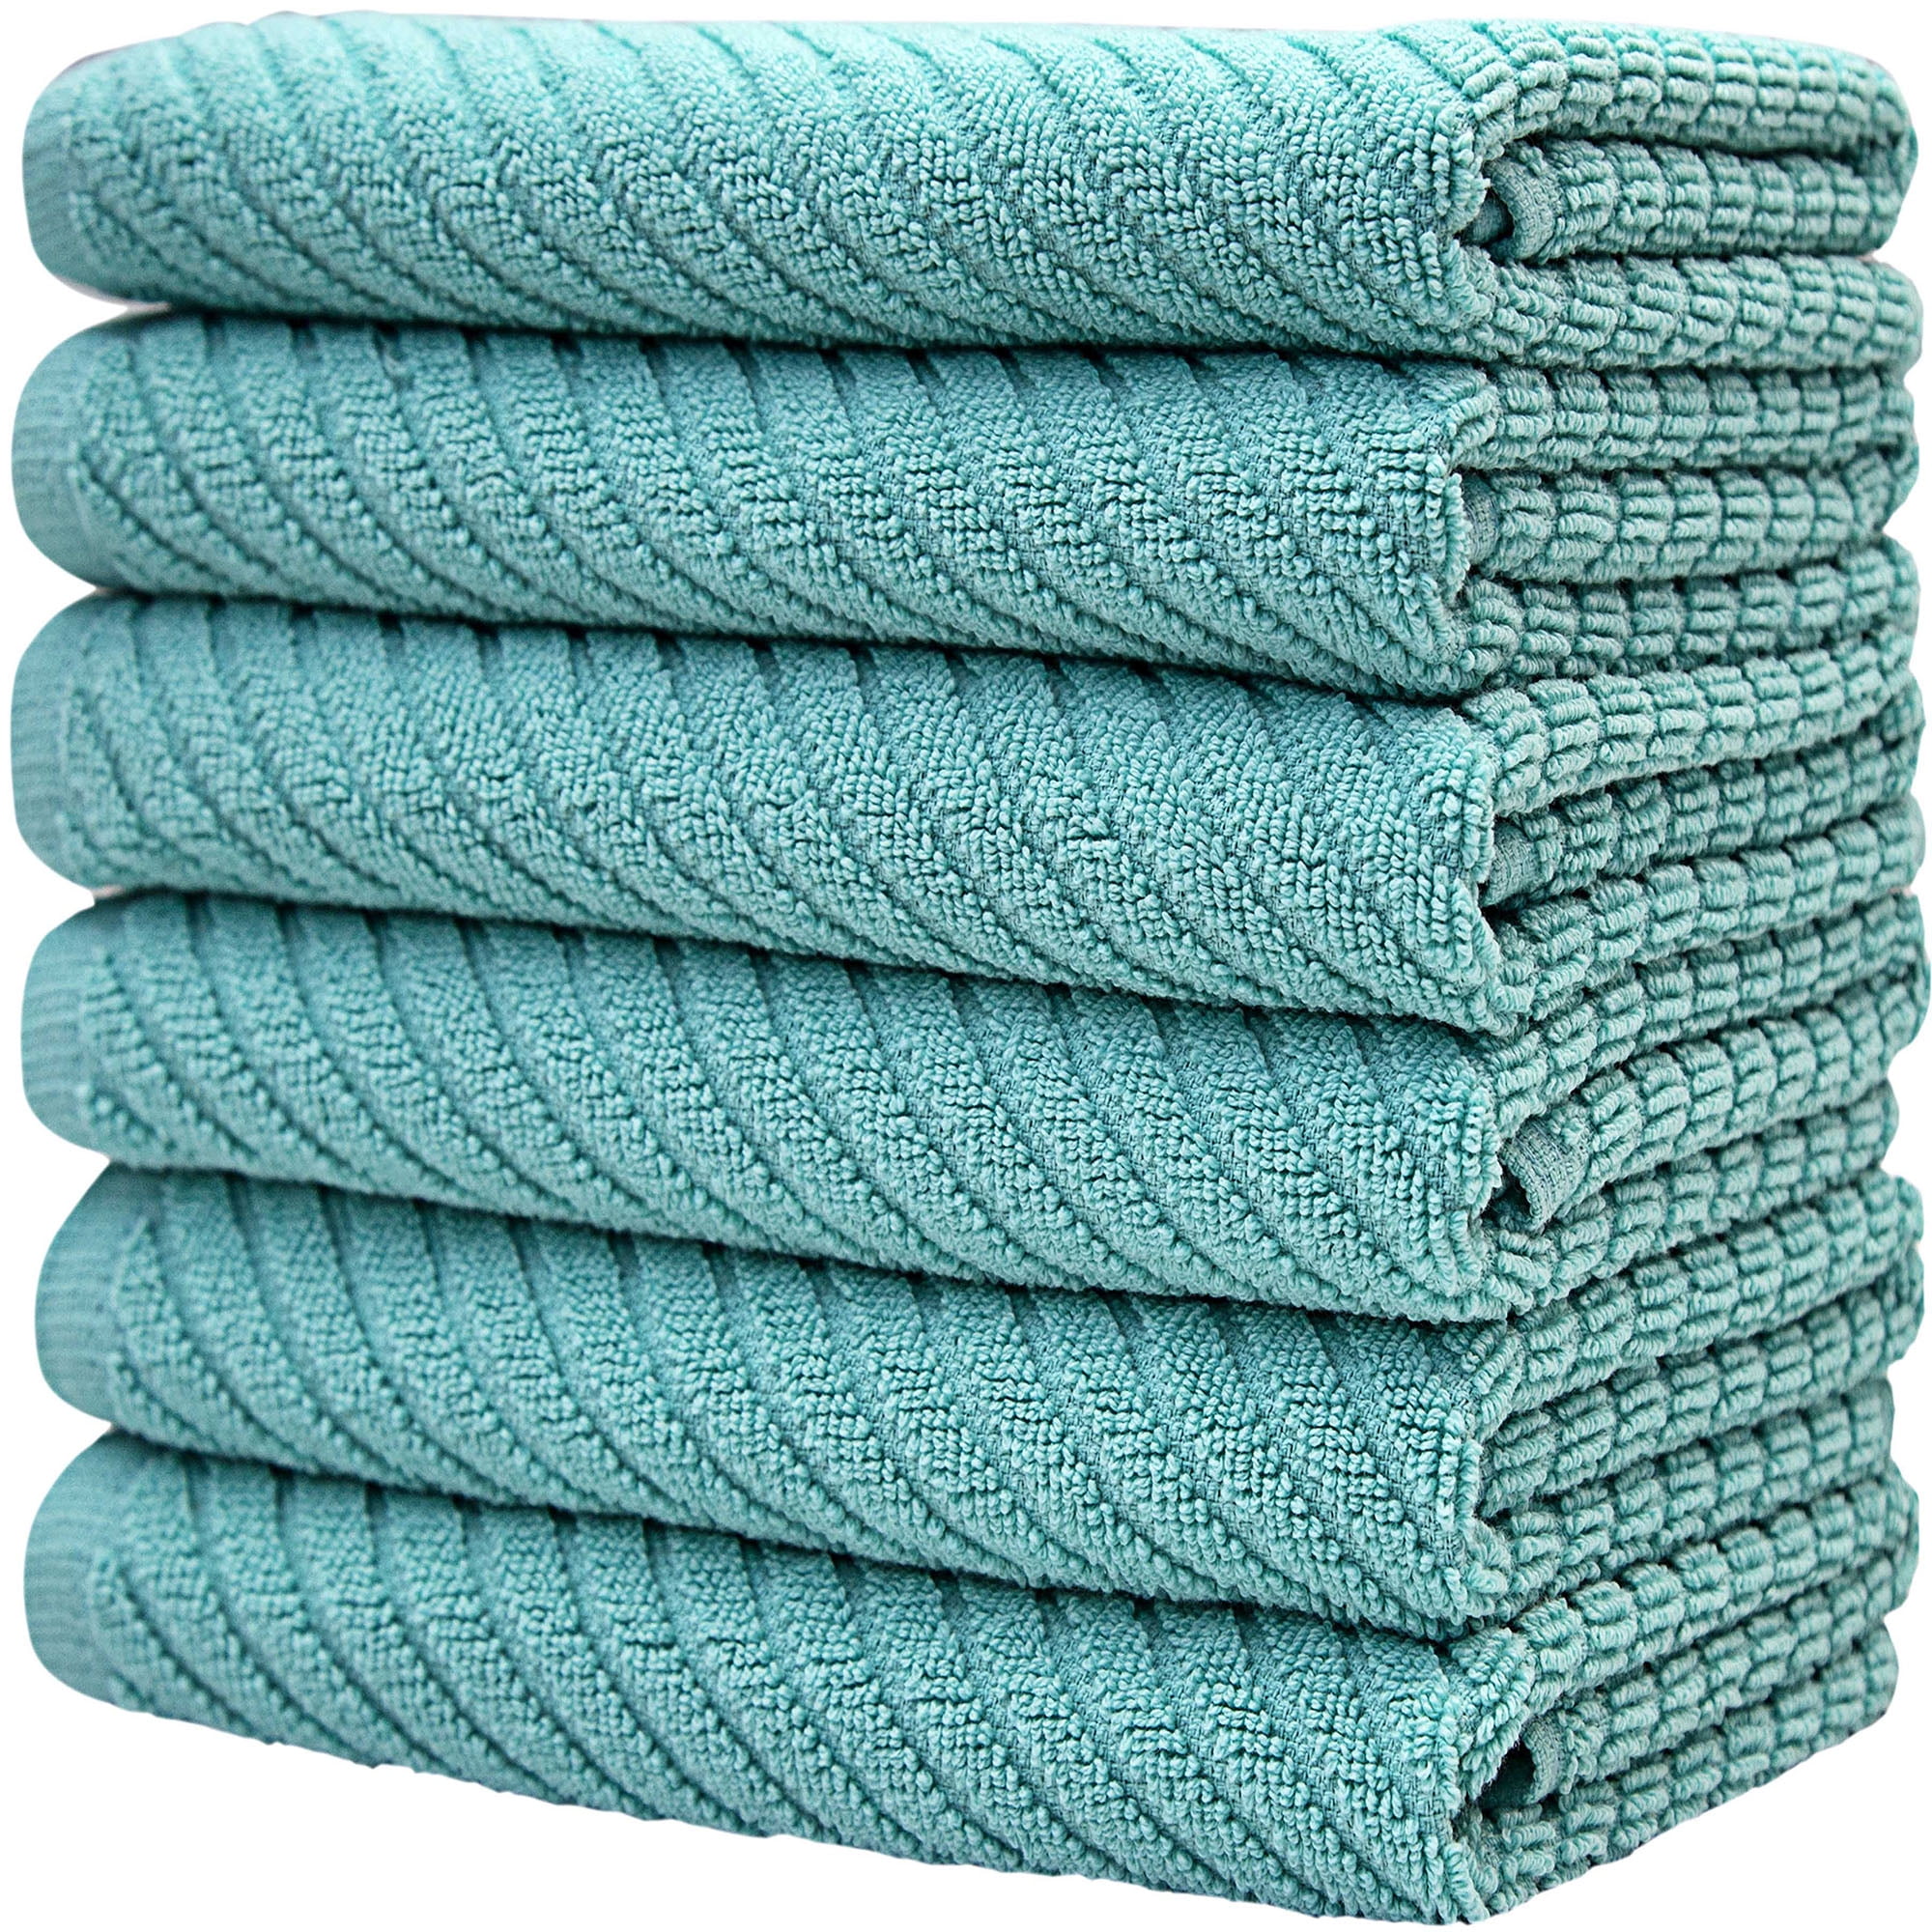 Bumble Towels Premium Kitchen Towels (16”x 28”, 8 Piece) Cotton